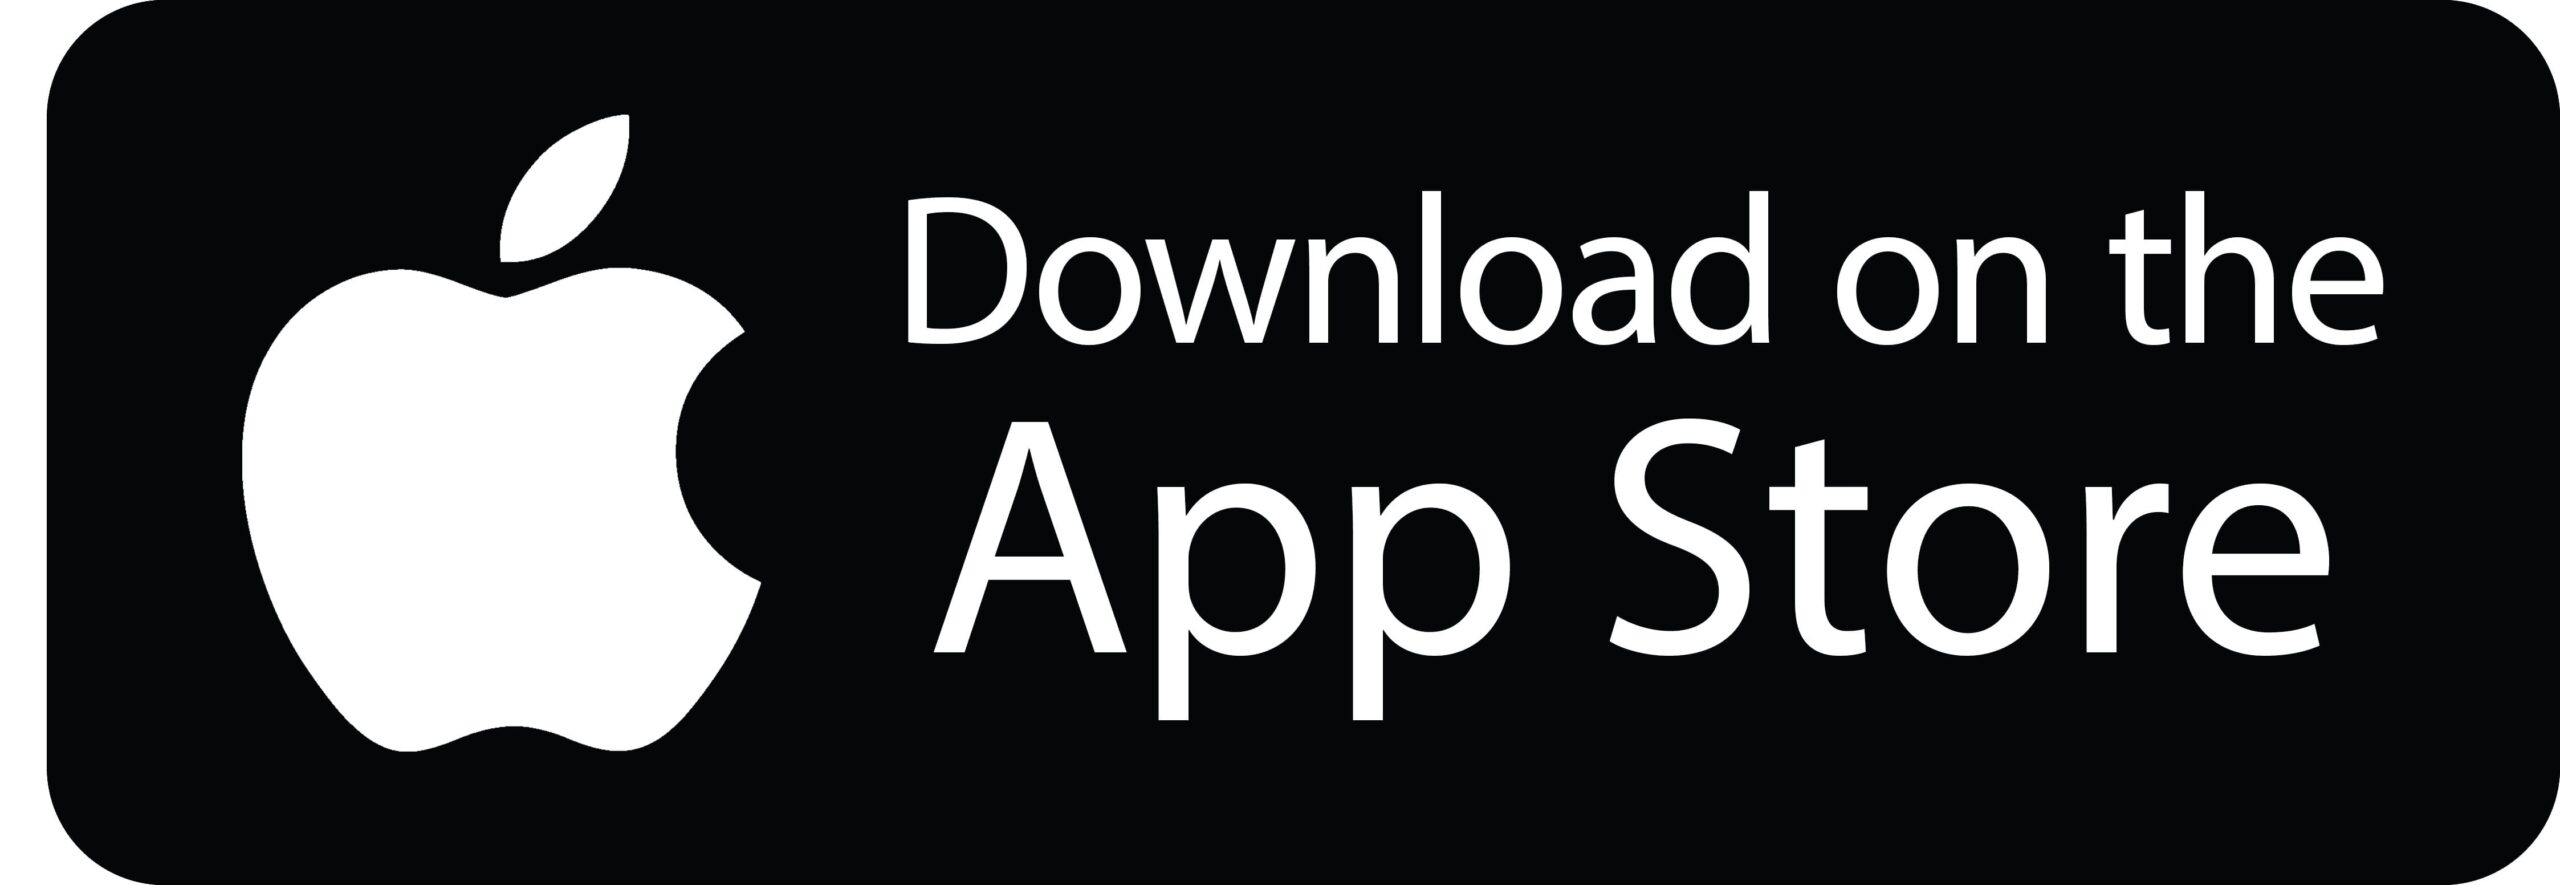 Descarga la aplicación en el App Store